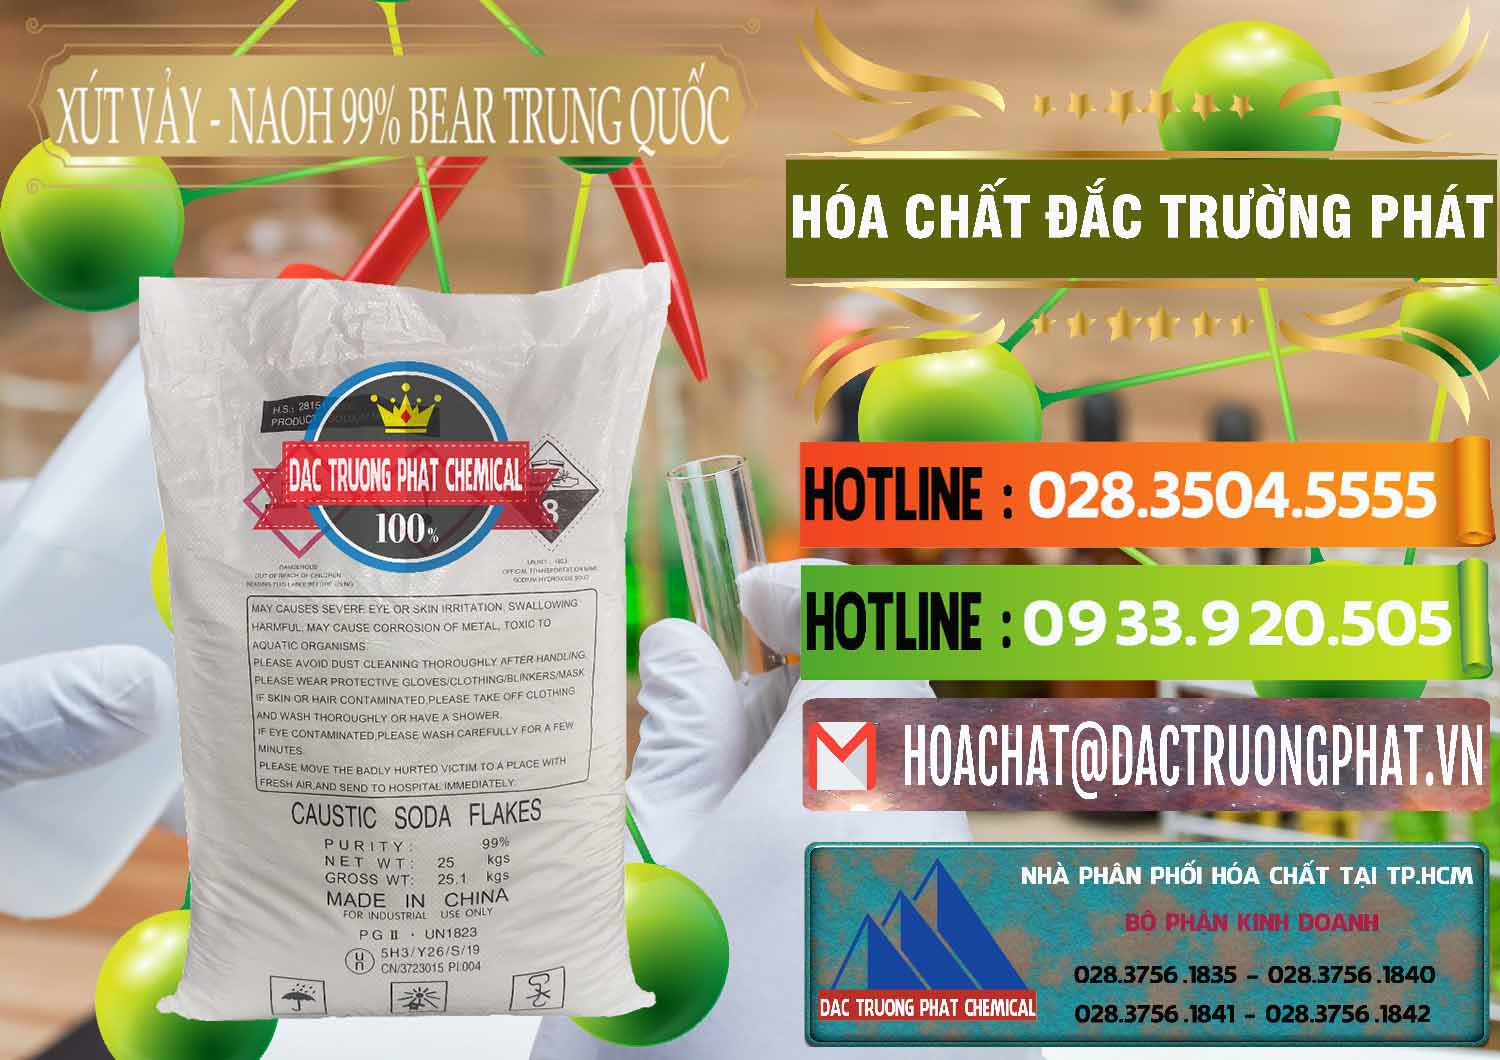 Công ty bán _ cung cấp Xút Vảy - NaOH Vảy 99% Bear Sơn Đông Trung Quốc China - 0175 - Cty chuyên kinh doanh _ cung cấp hóa chất tại TP.HCM - cungcaphoachat.com.vn